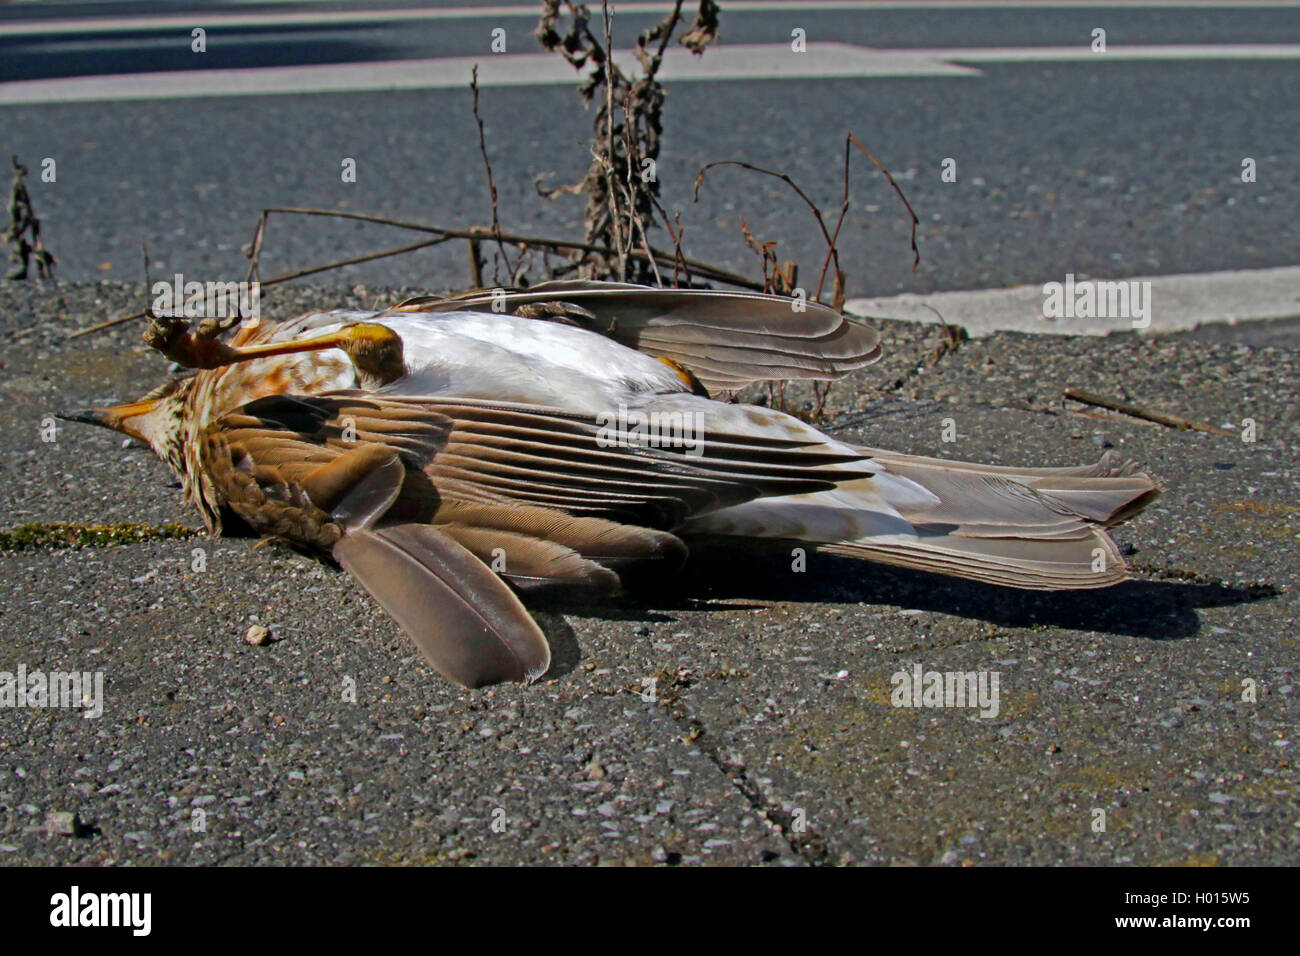 Singdrossel, Sing-Drossel (Turdus philomelos), von einem PKW getoetet, Singdrossel liegt tot auf einer asphaltierten Strasse, De Stock Photo